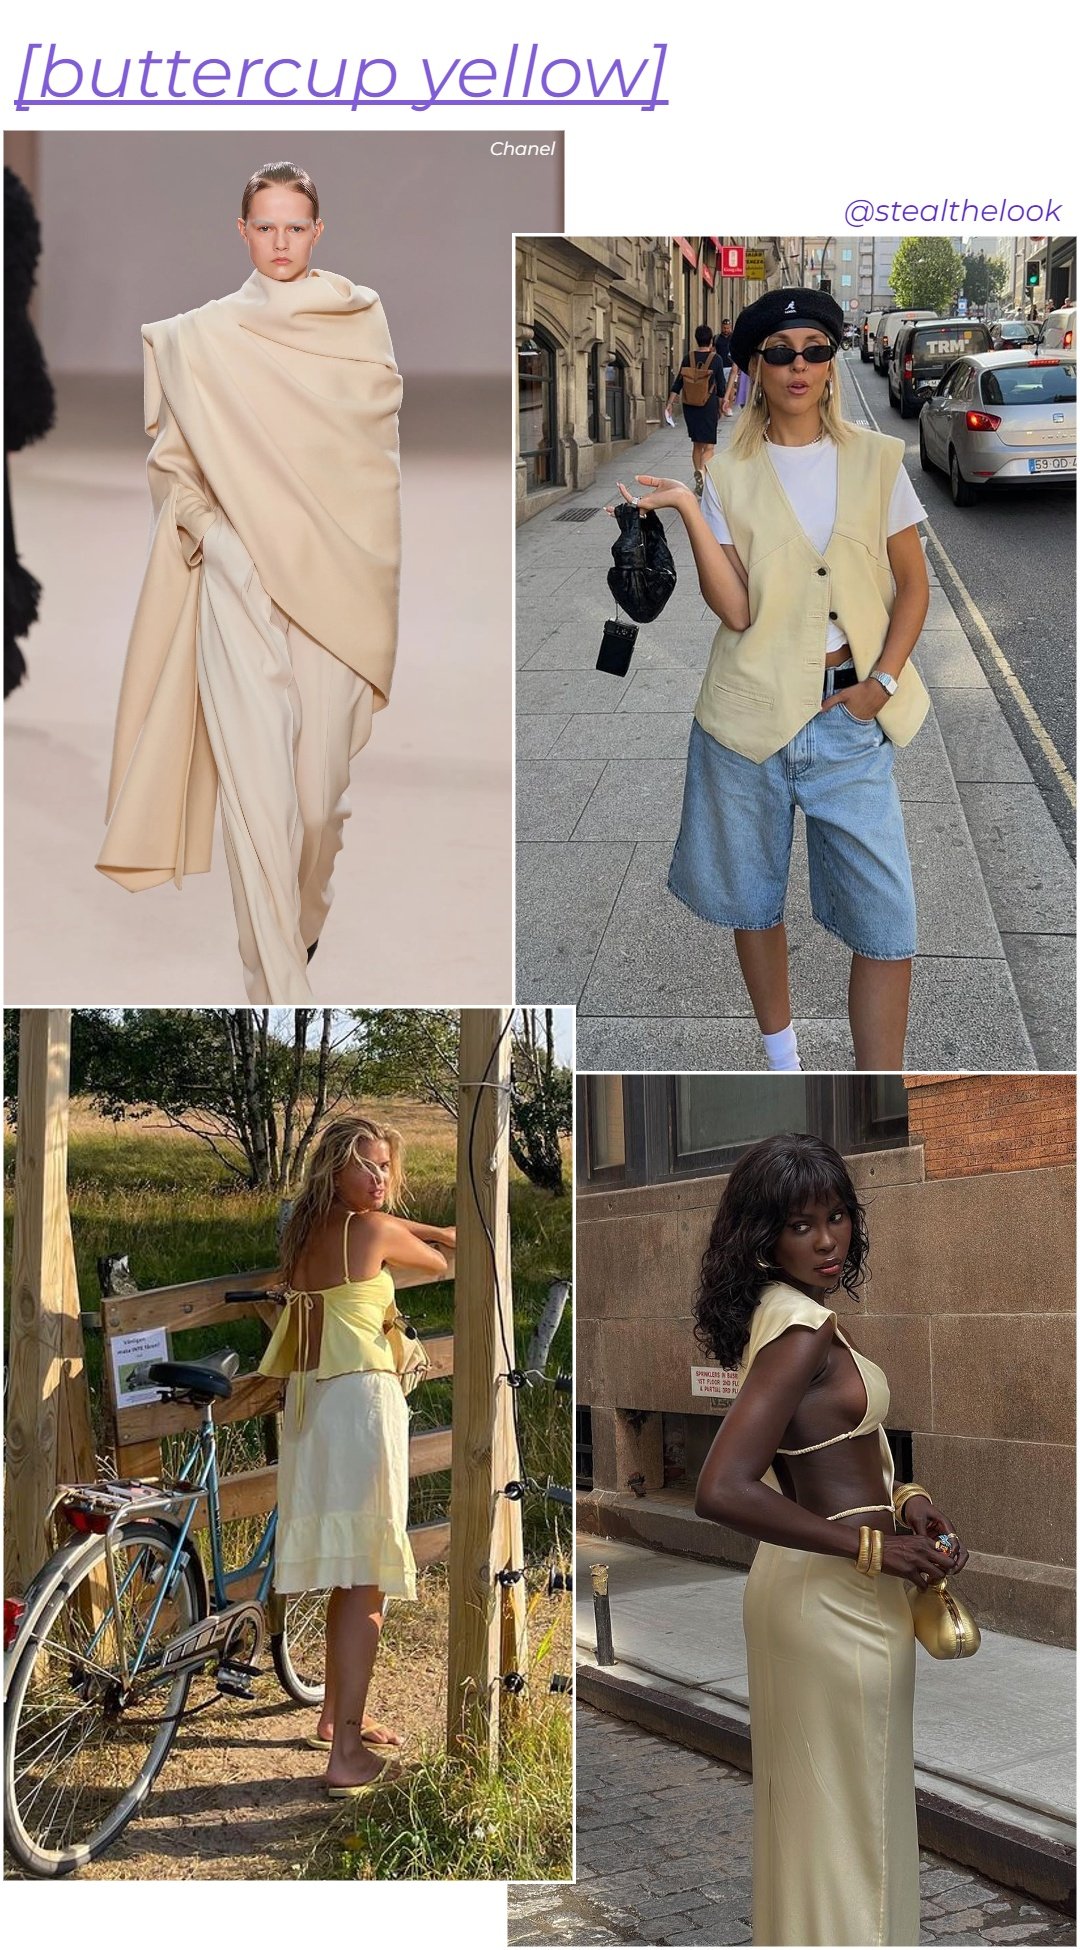 Del Core, Sofia Coelho, Matilda Djerf e Amy Julliette Lefévre - roupas diversas em tons de amarelo - cores tendência - verão - colagem de imagens - https://stealthelook.com.br